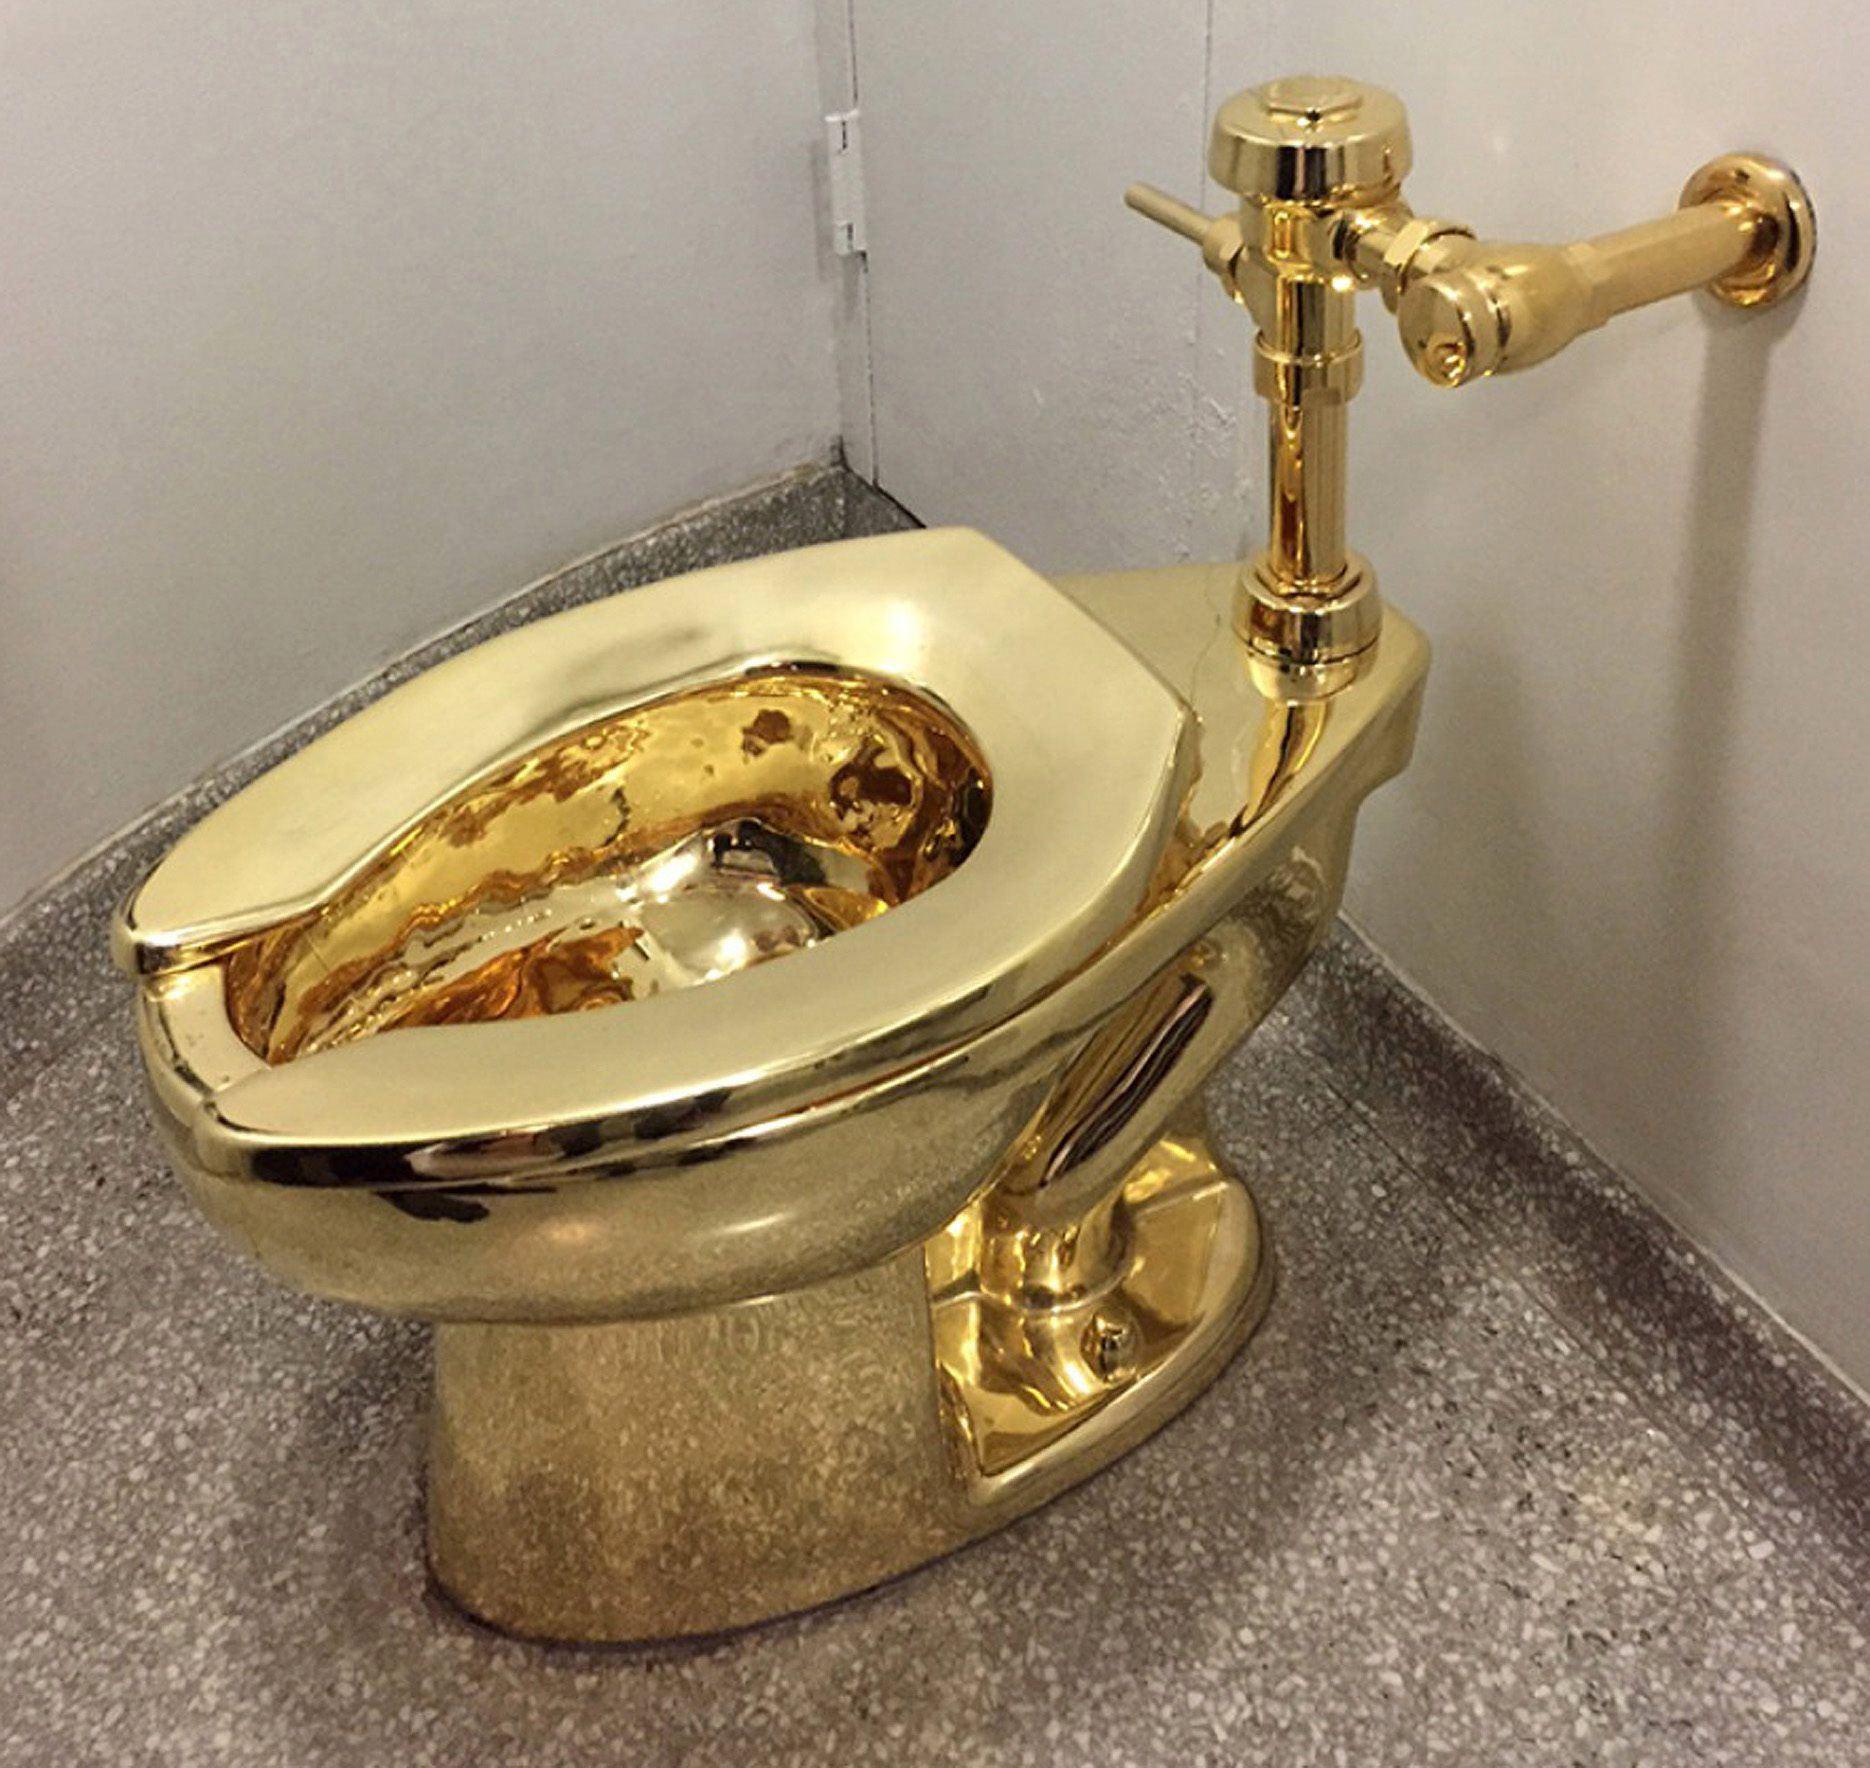 Cattelans gouden wc gestolen | De Standaard